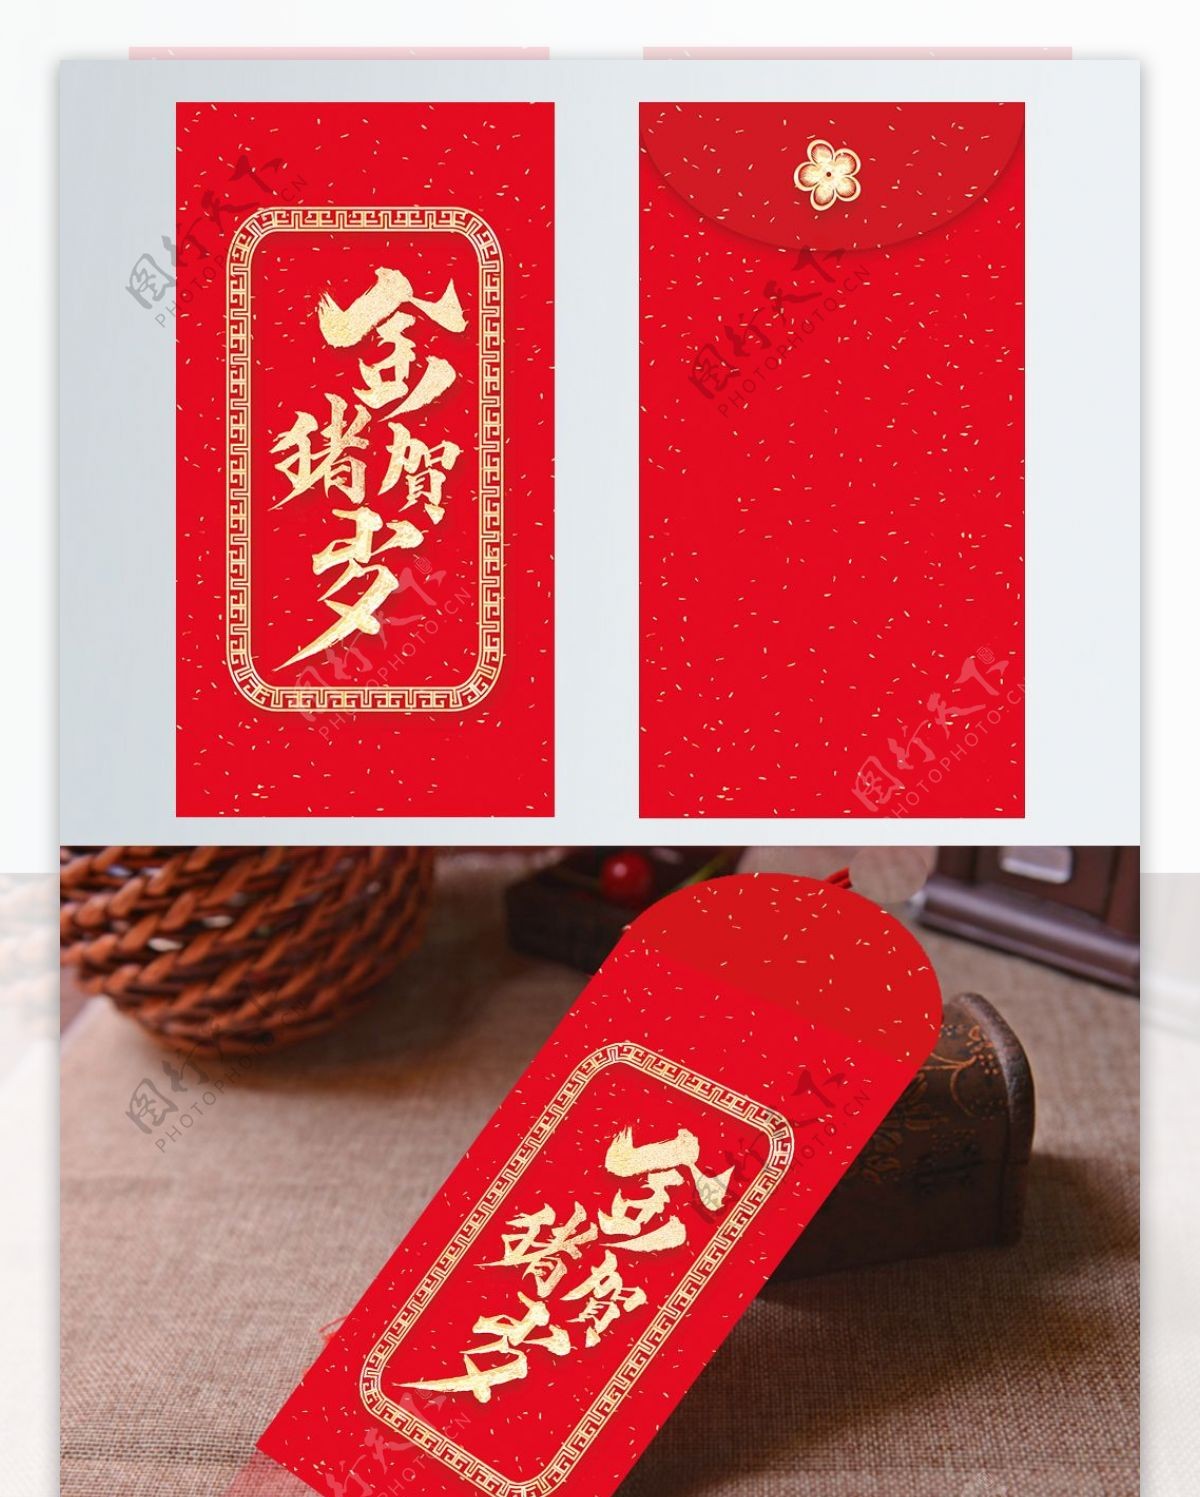 2019猪年红包中国风包装模版